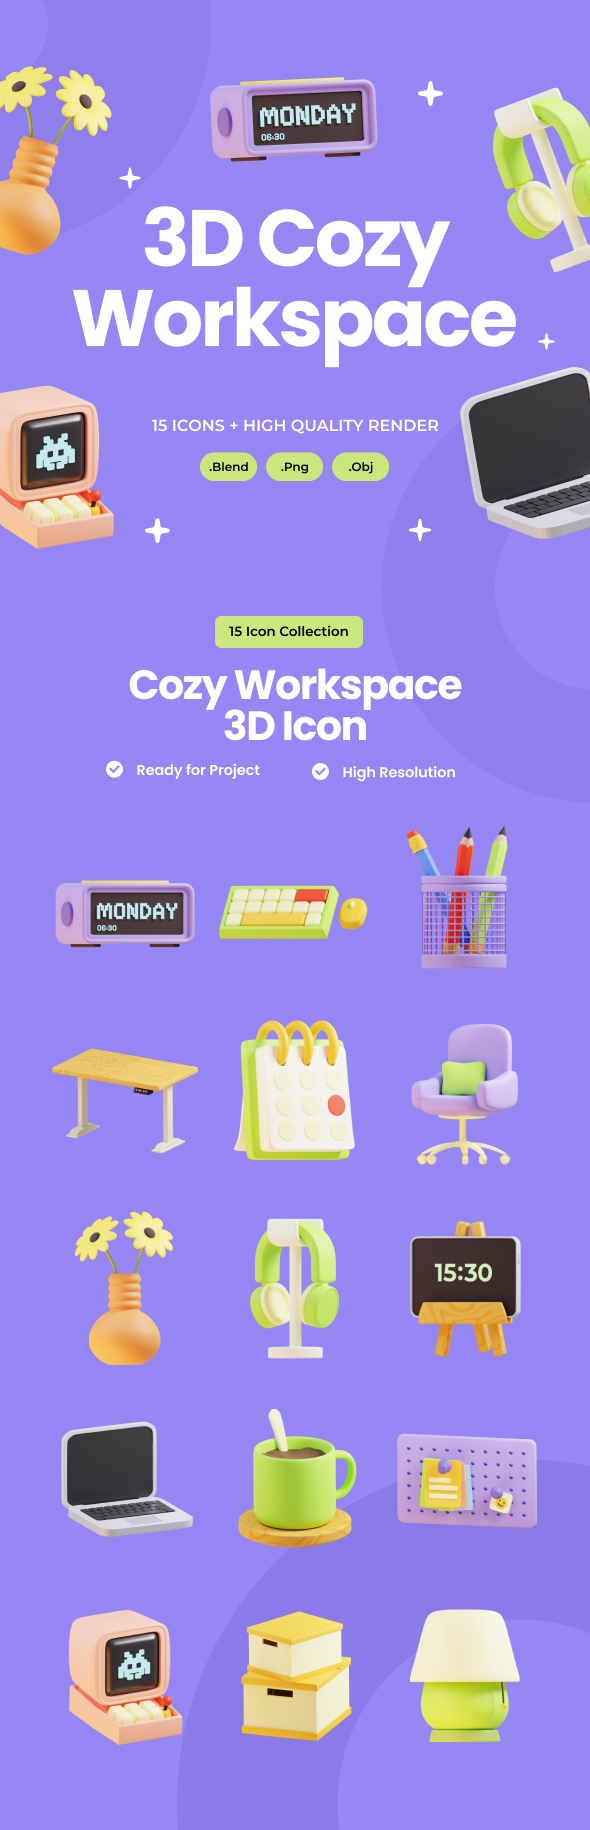 3D Cozy Workspace